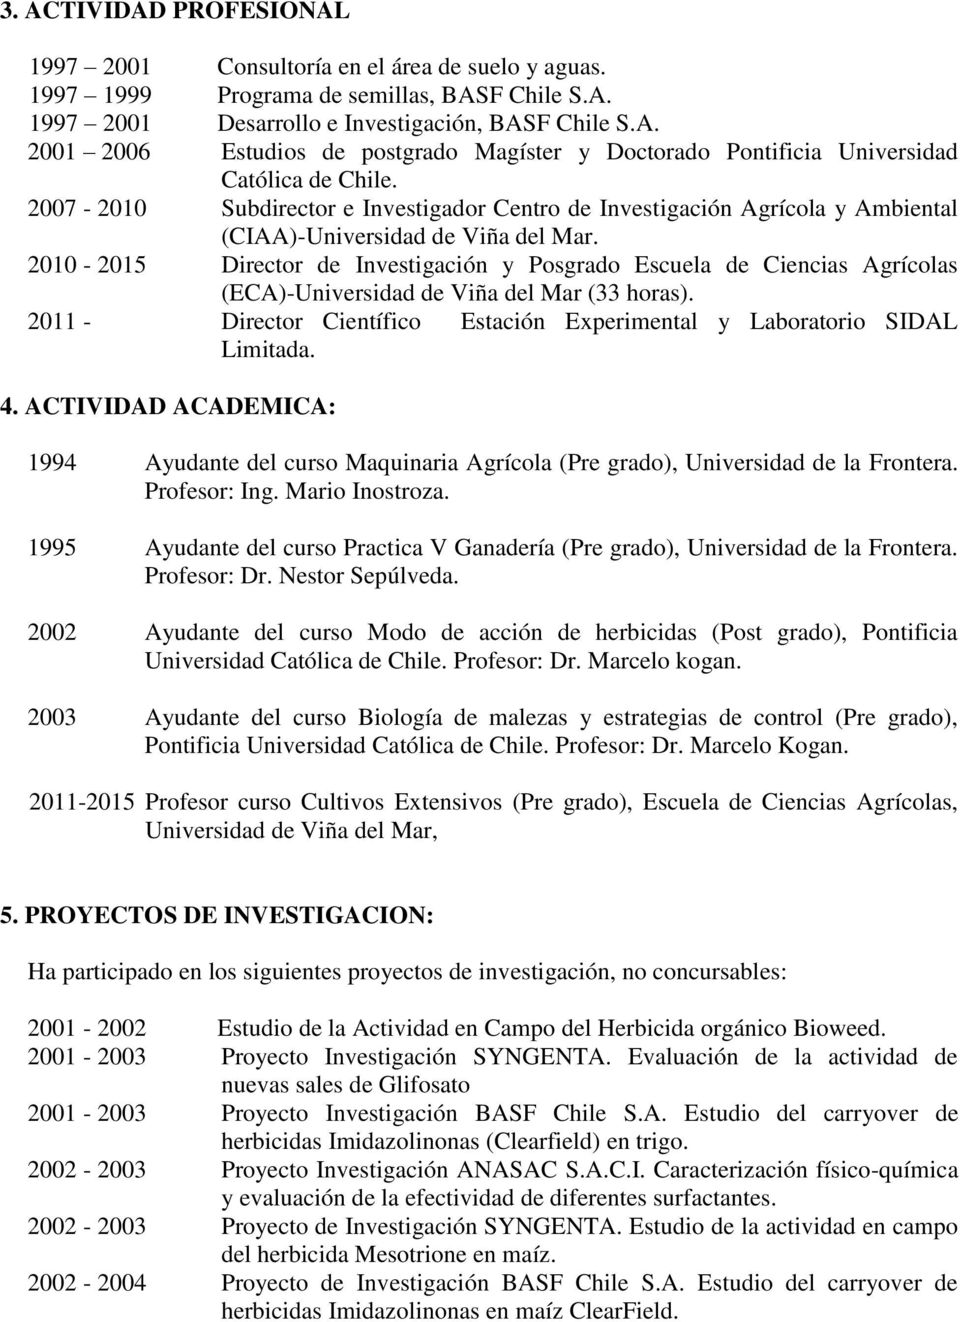 2010-2015 Director de Investigación y Posgrado Escuela de Ciencias Agrícolas (ECA)-Universidad de Viña del Mar (33 horas).